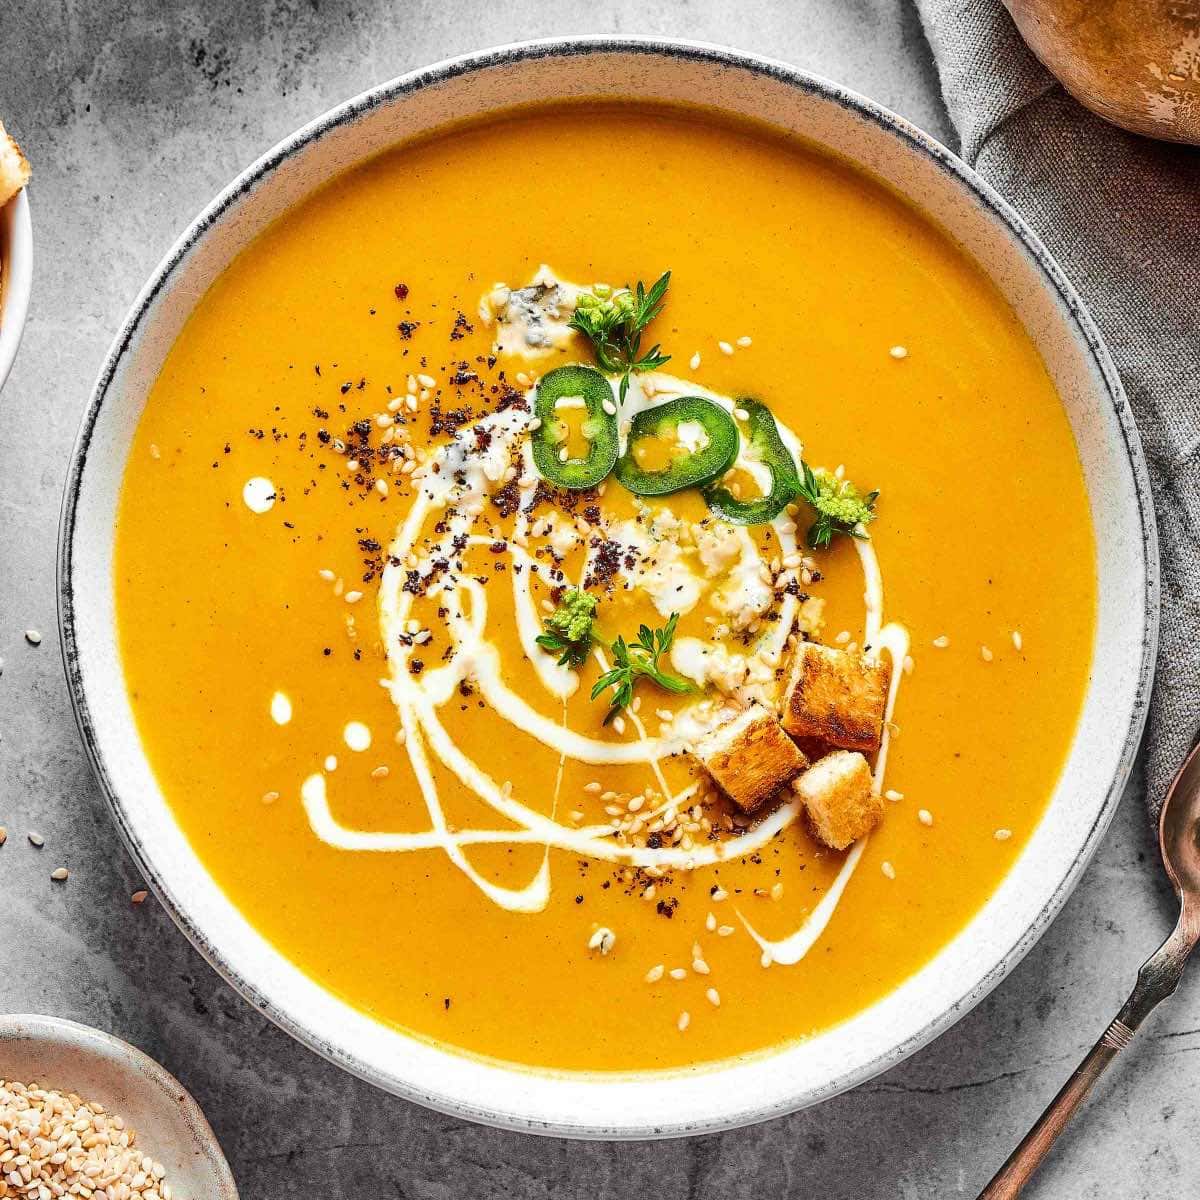 https://thebigmansworld.com/wp-content/uploads/2022/10/pumpkin-curry-soup-recipe.jpg